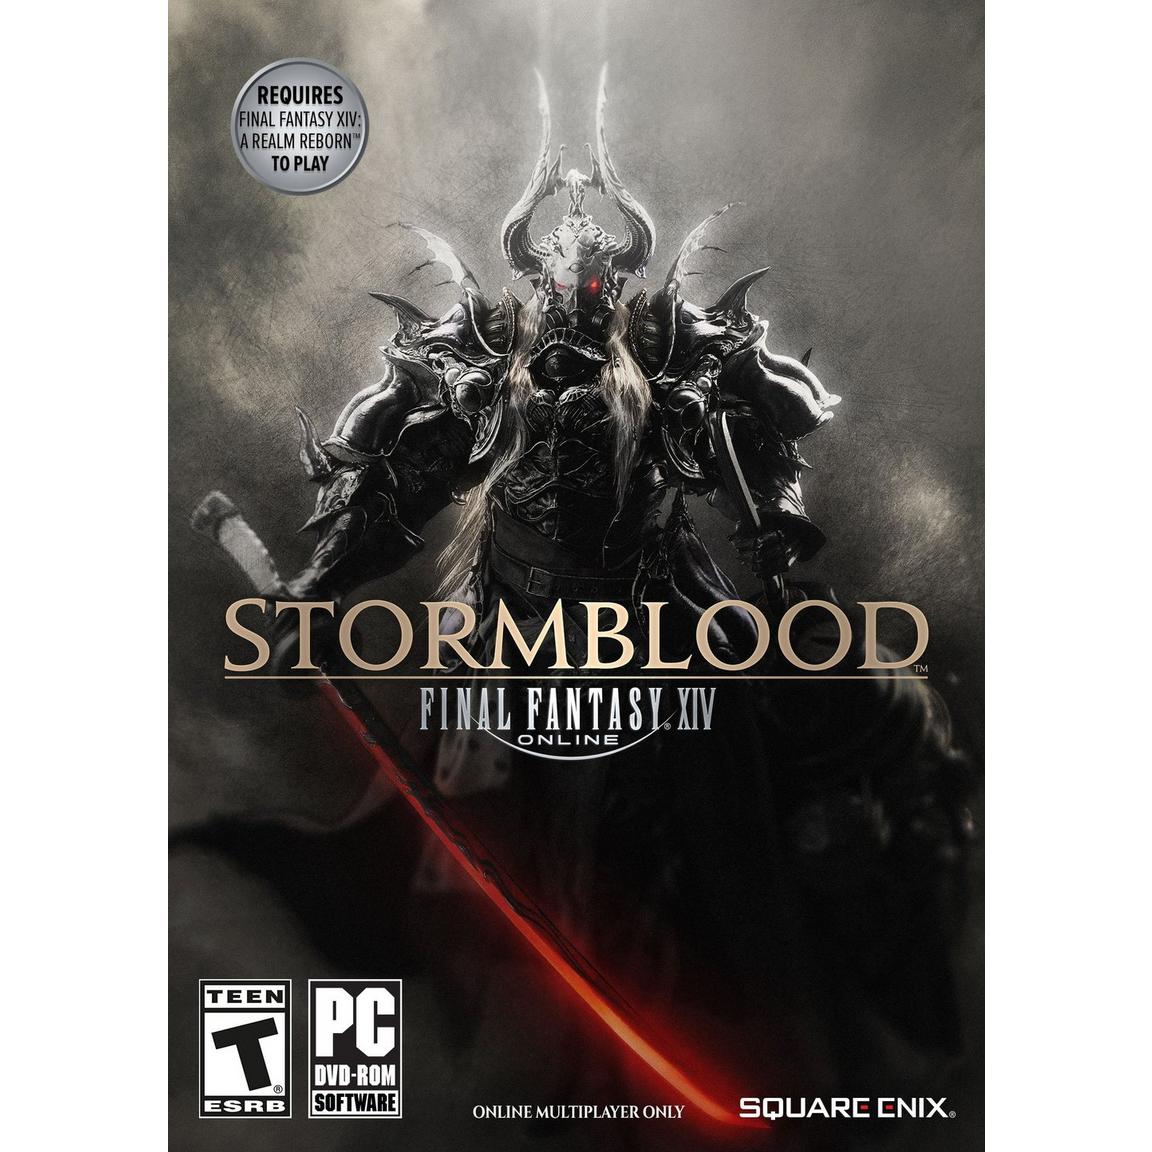 Final Fantasy XIV: Stormblood DLC - PC, Digital